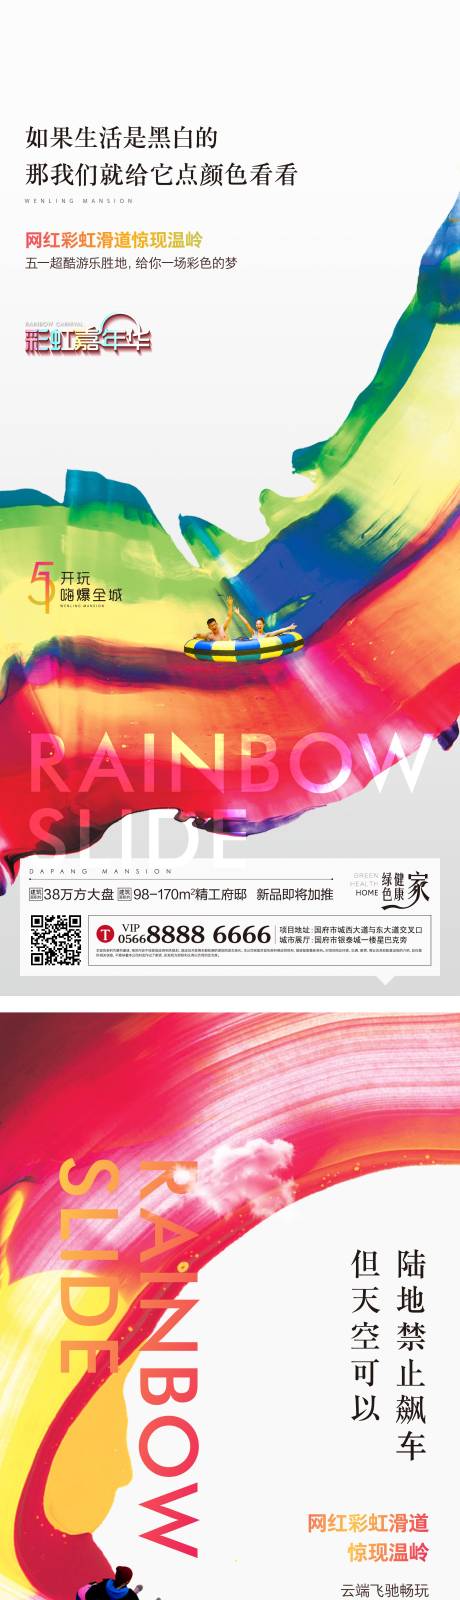 彩虹滑道系列海报